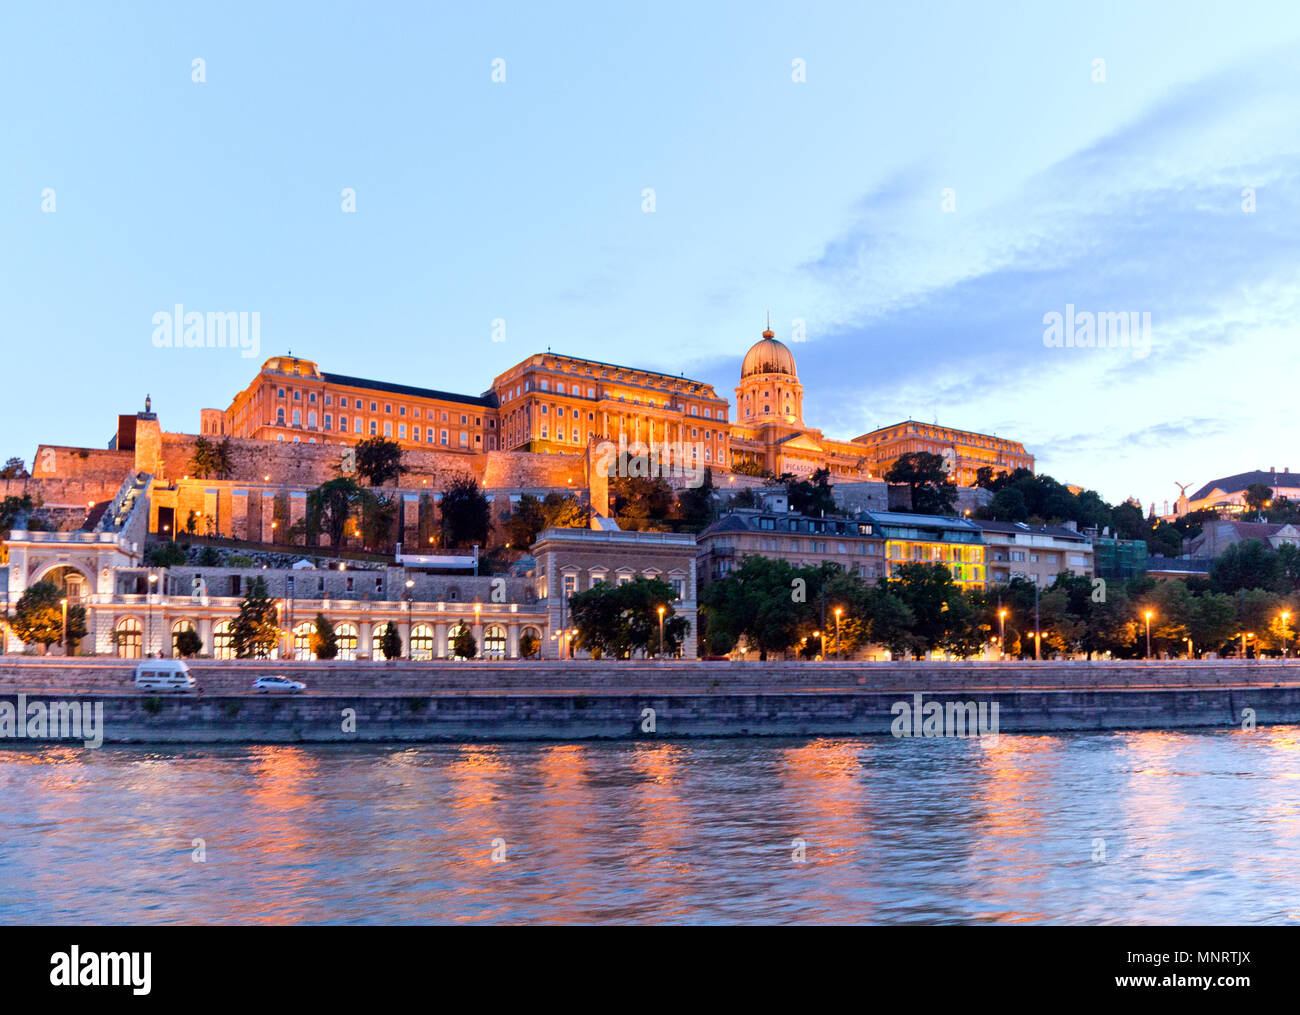 Die ungarische Königliche Palast, heute drei Museen, die in der Dämmerung von der Donau, Budapest, Ungarn gesehen. Stockfoto